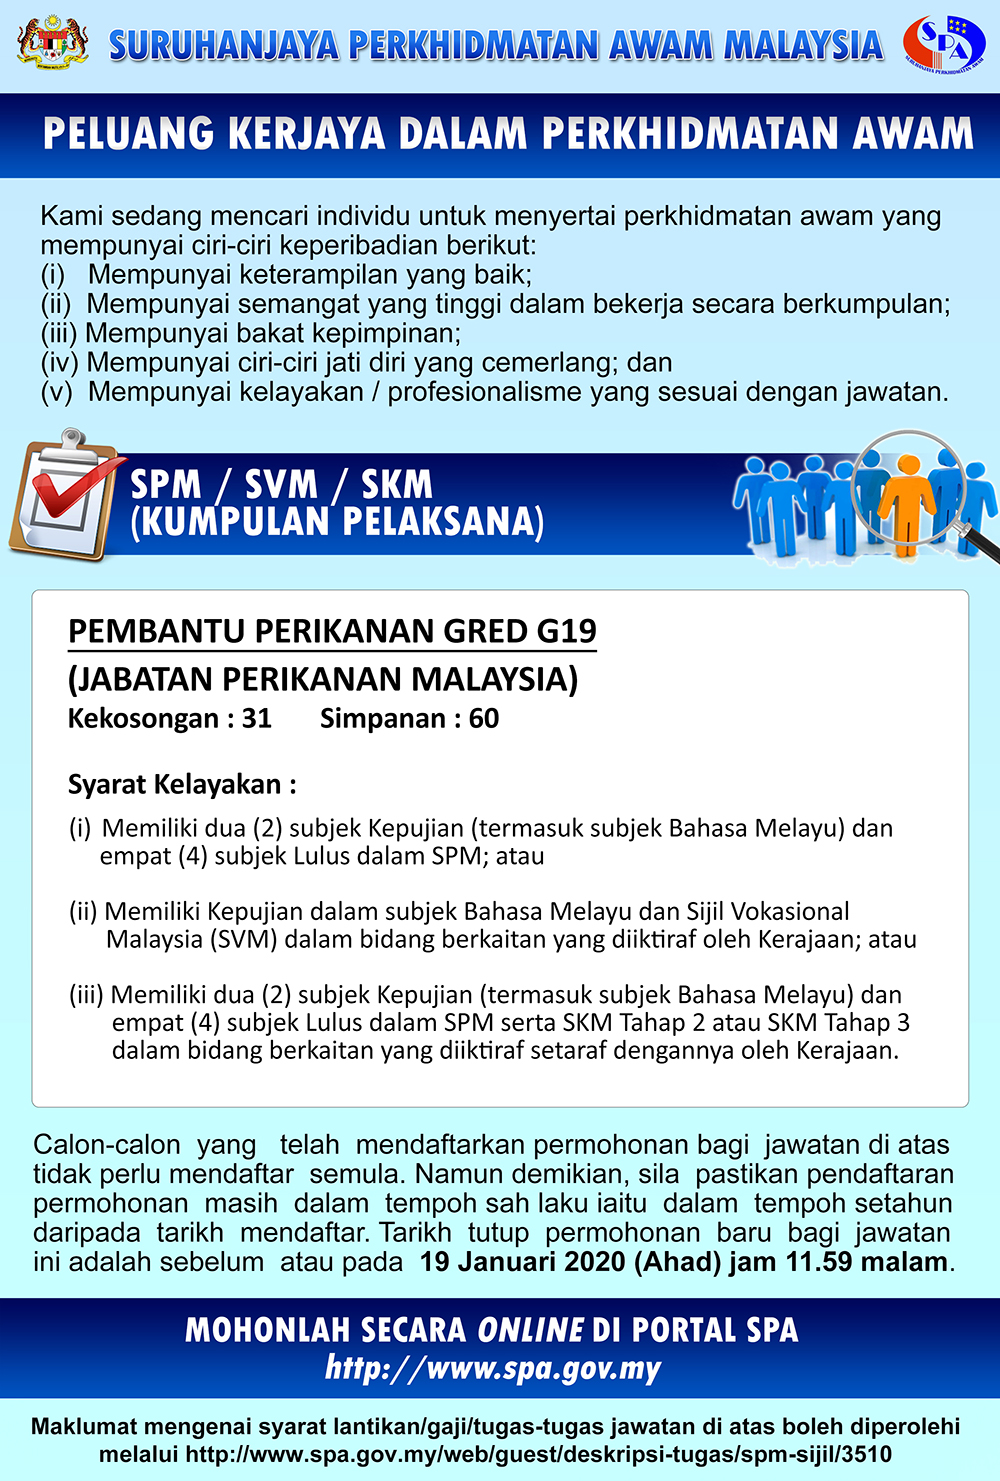 Jawatan Kosong Jabatan Perikanan Malaysia 2020 - JOBCARI 